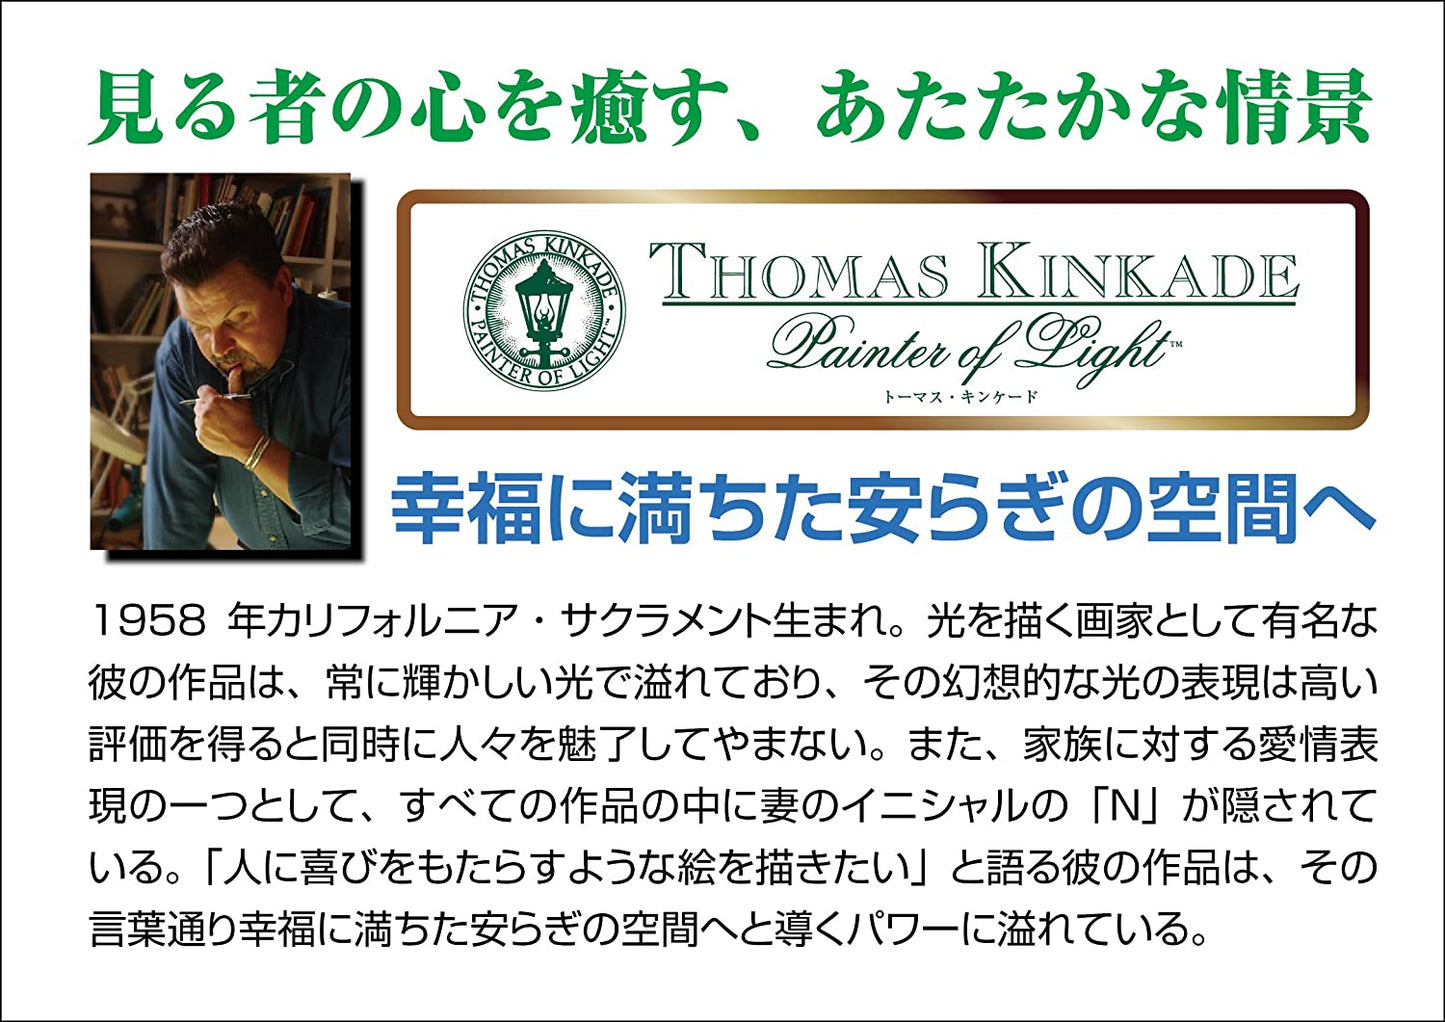 (迷你尺寸) (帆布紋理) Thomas Kinkade - 暮光下的威尼斯咖啡館 1000塊 (26×38cm)